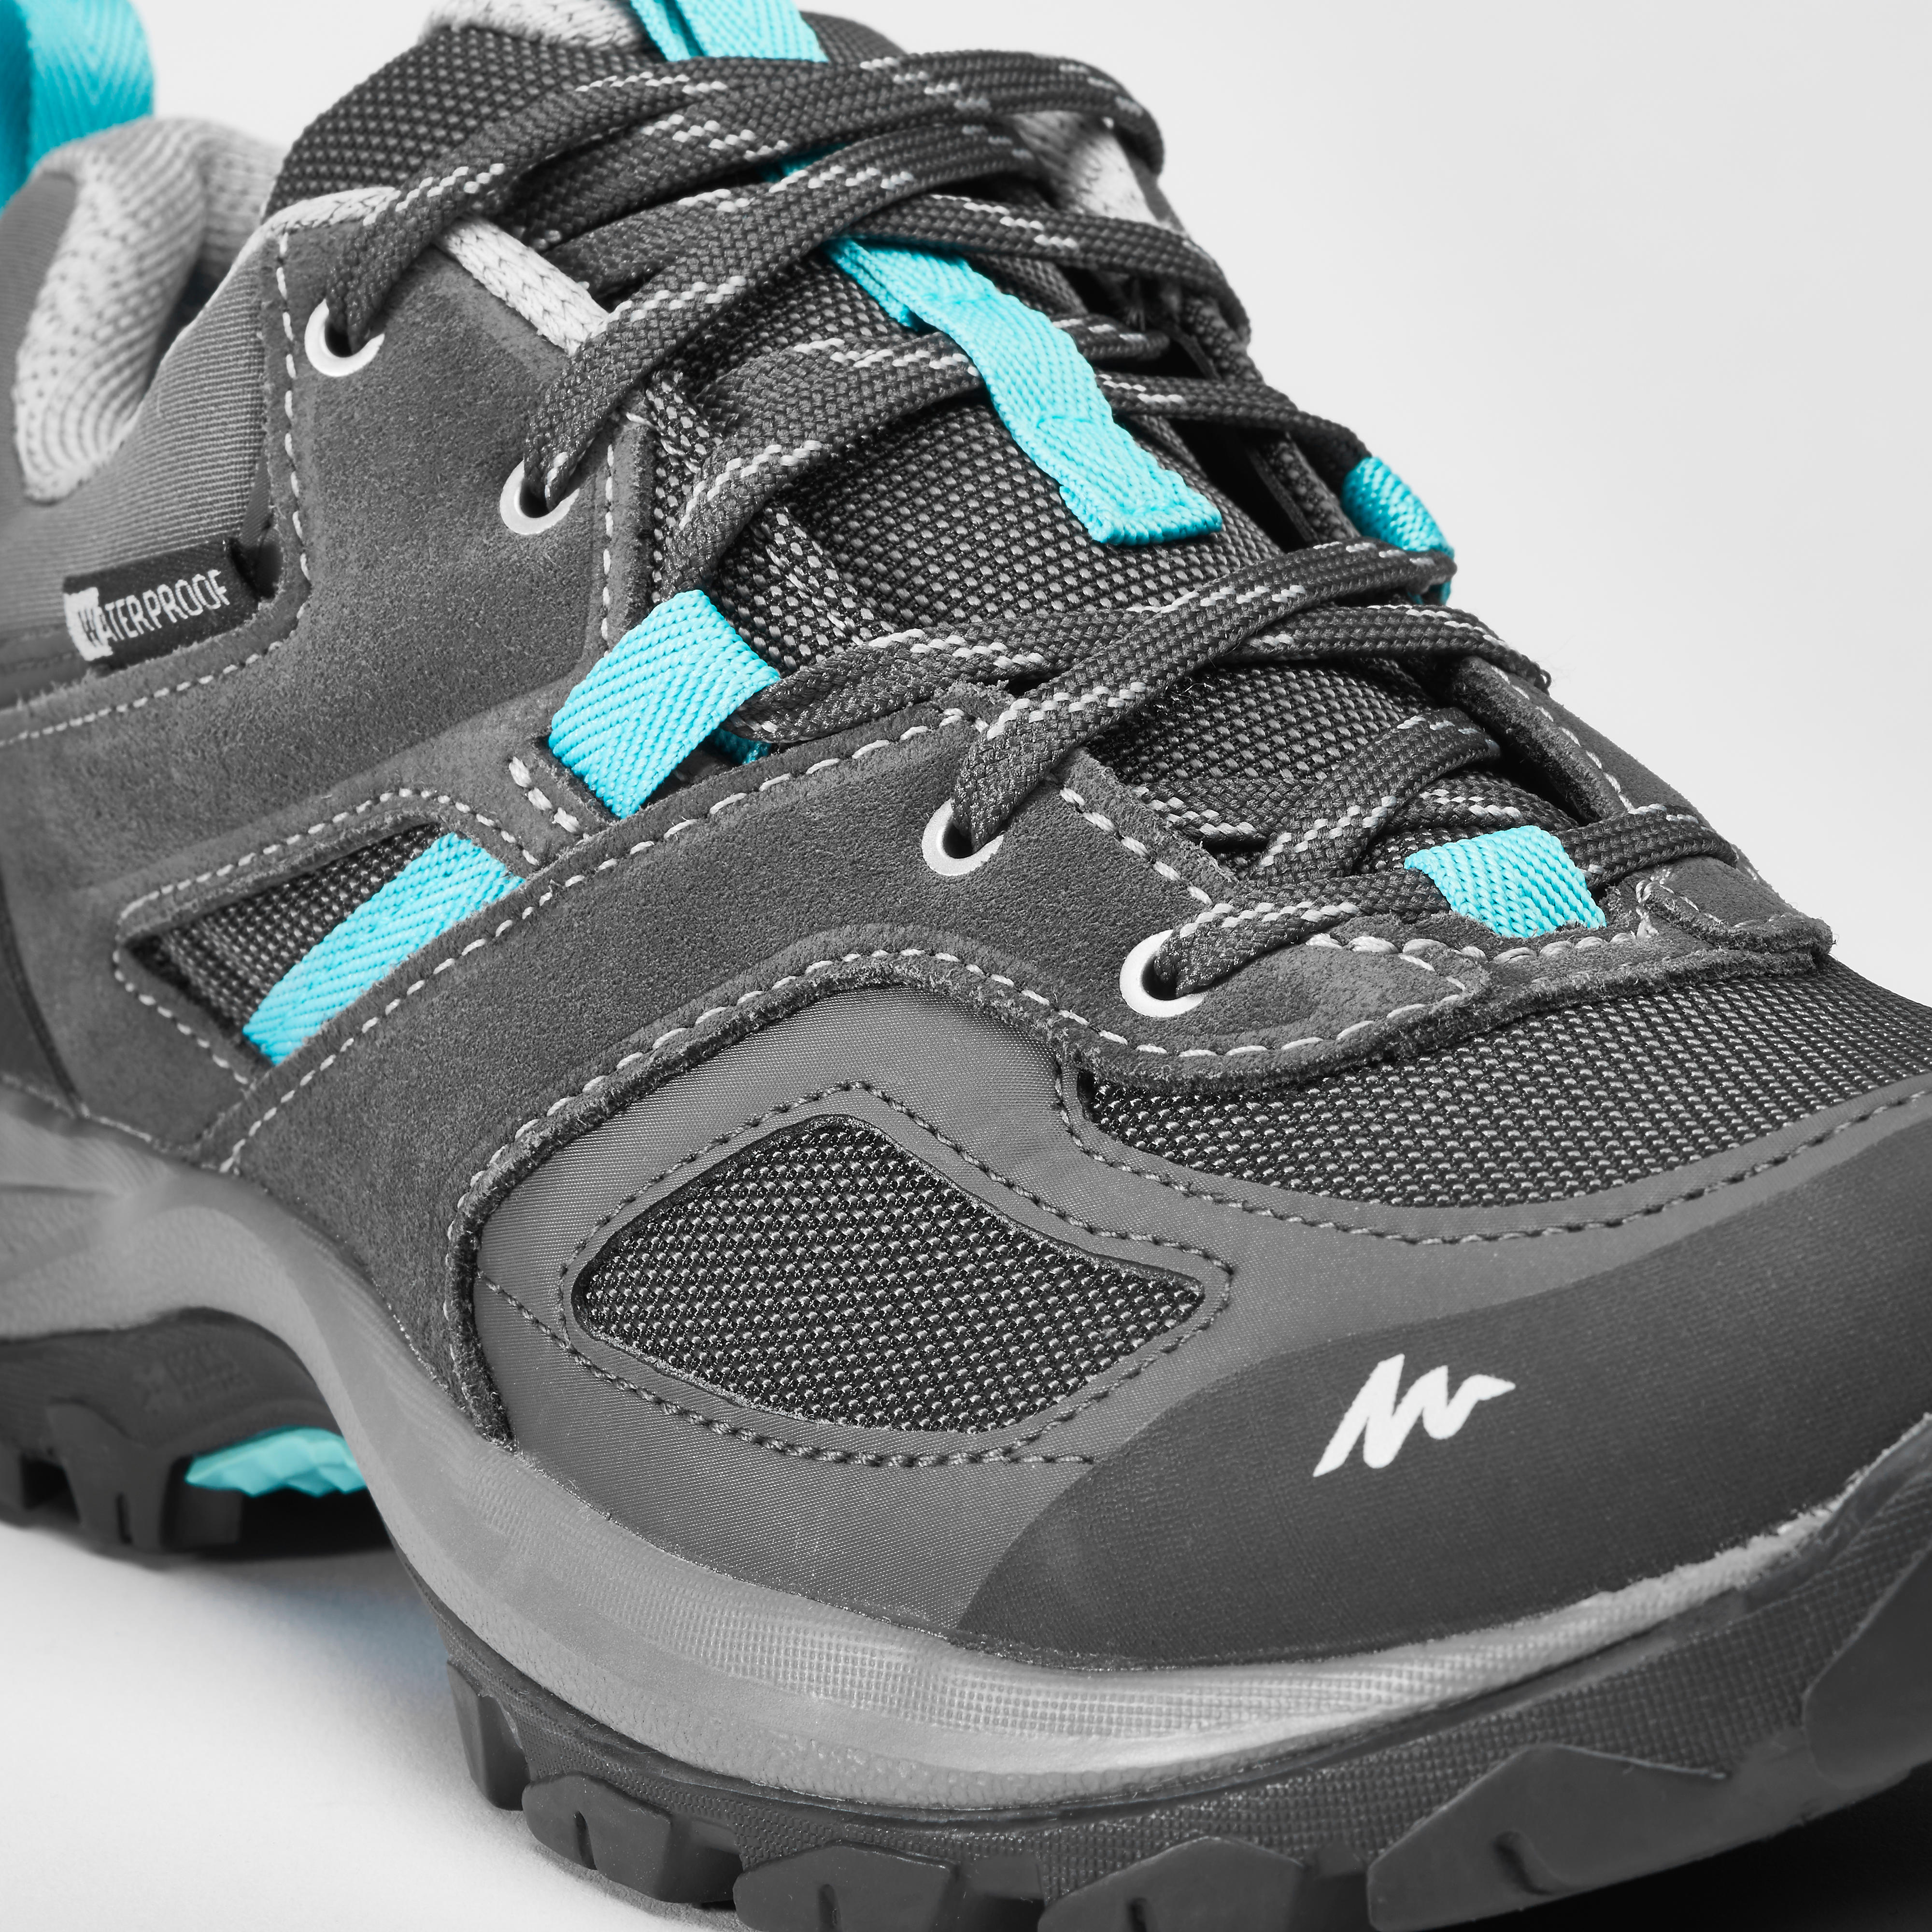 Chaussures de randonnée imperméables femme – MH 100 gris/bleu - QUECHUA